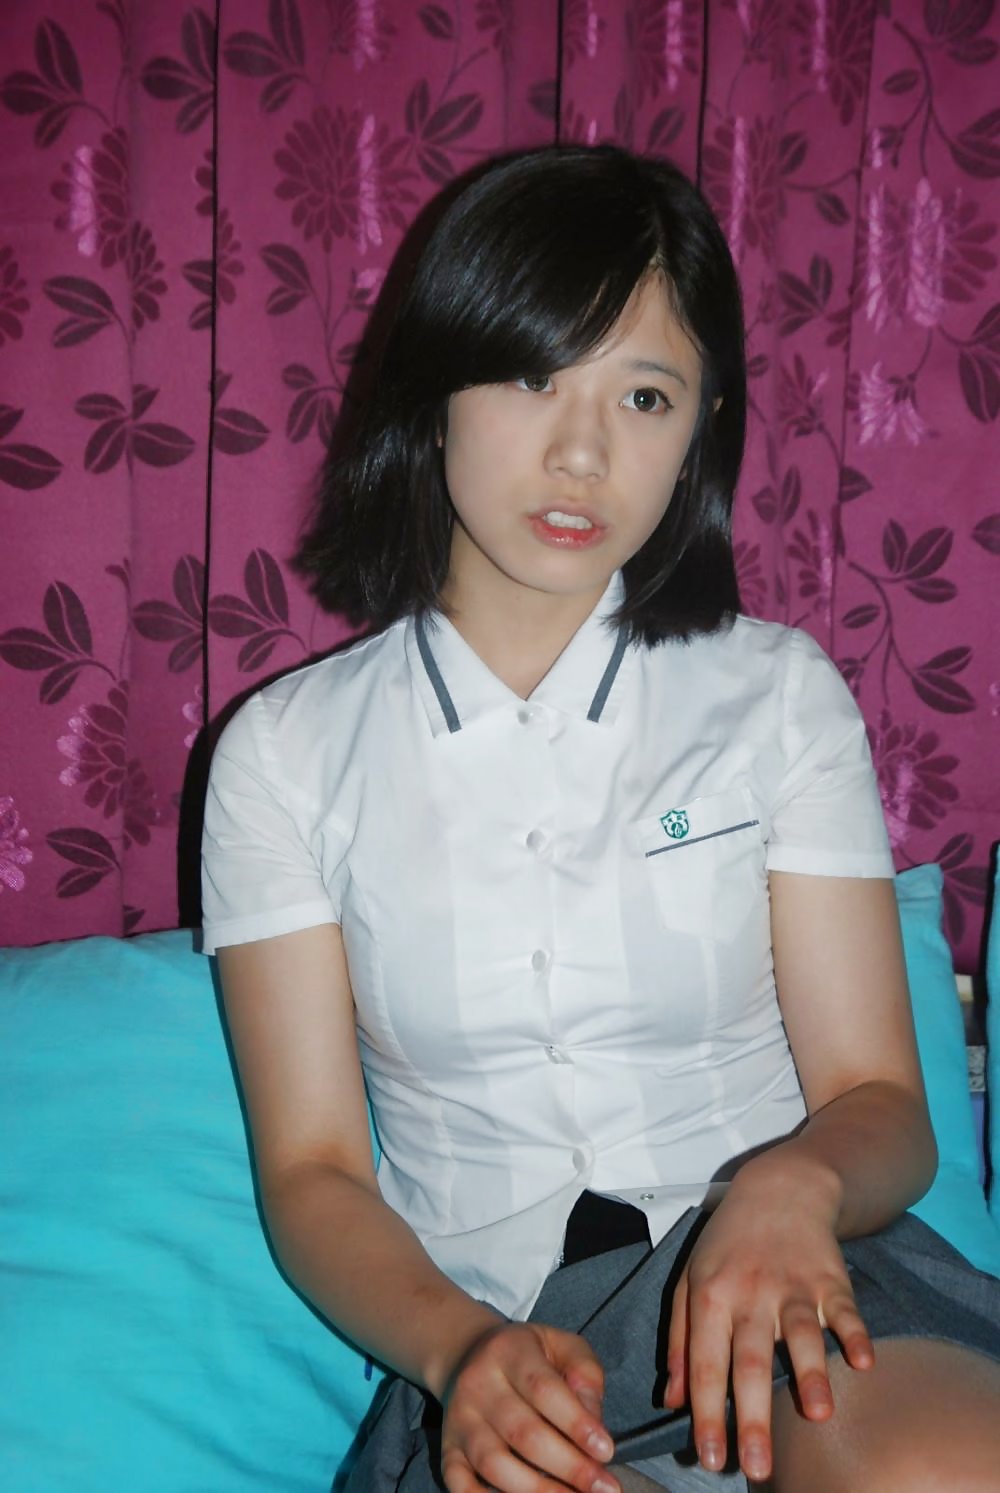 Amateur Asians Korean Teen 8736 Hot Sex Picture hq nude image